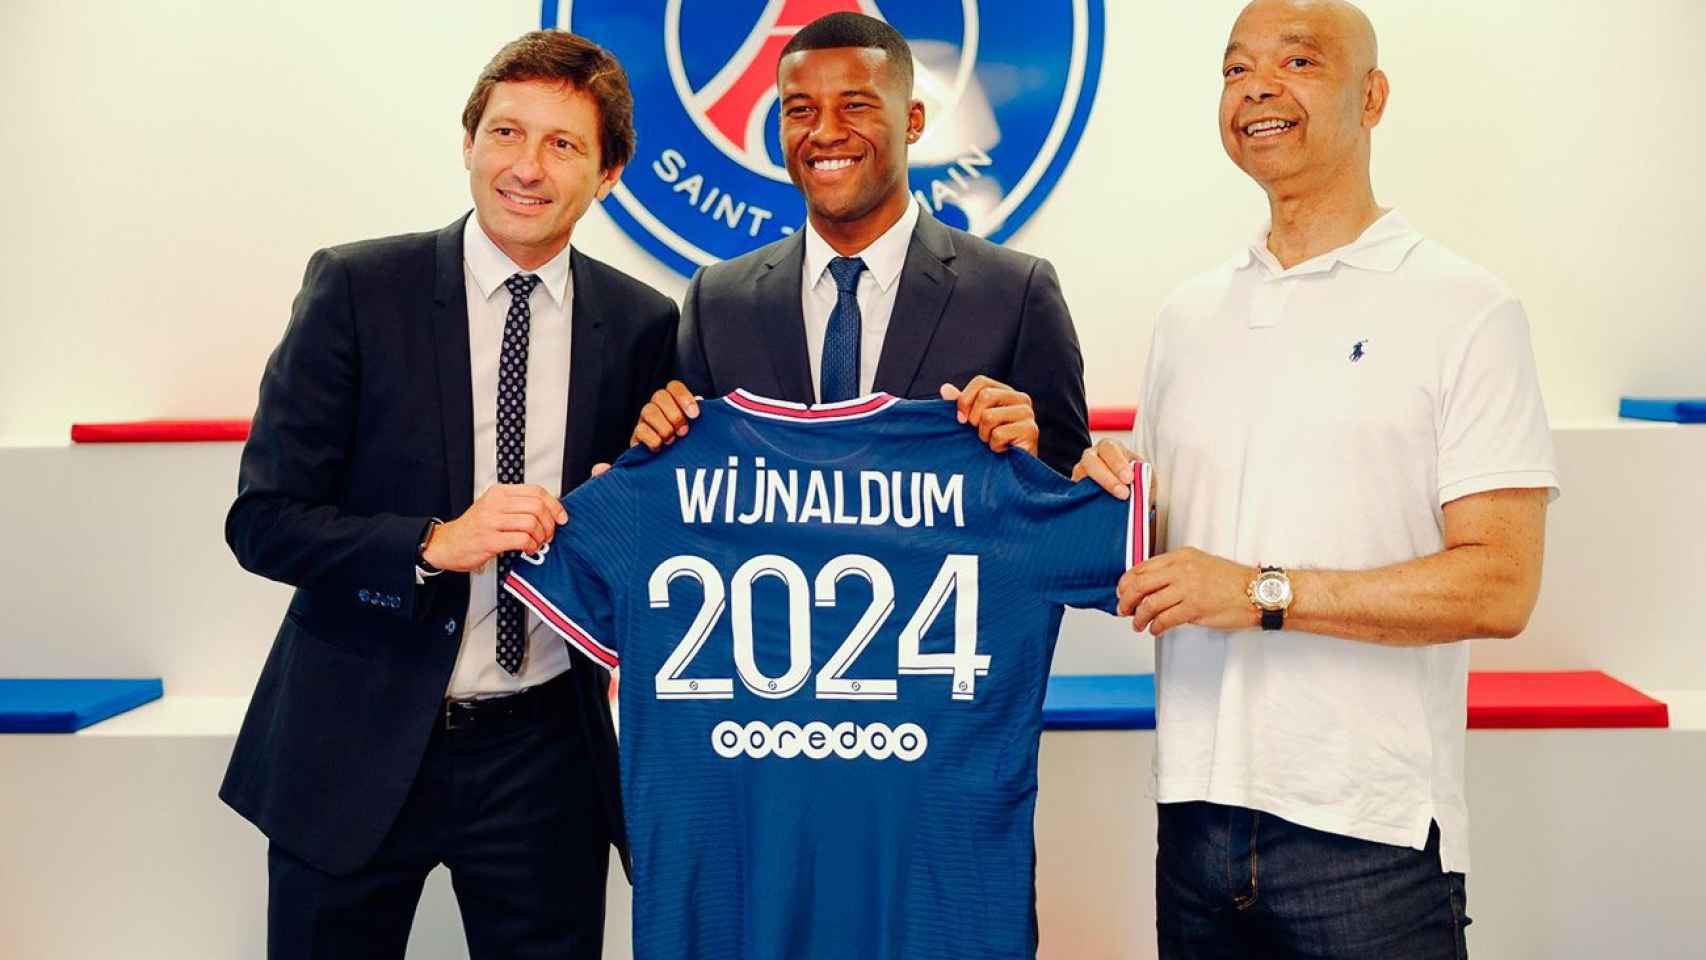 Wijnaldum presentado como nuevo jugador del PSG, el club de moda / PSG